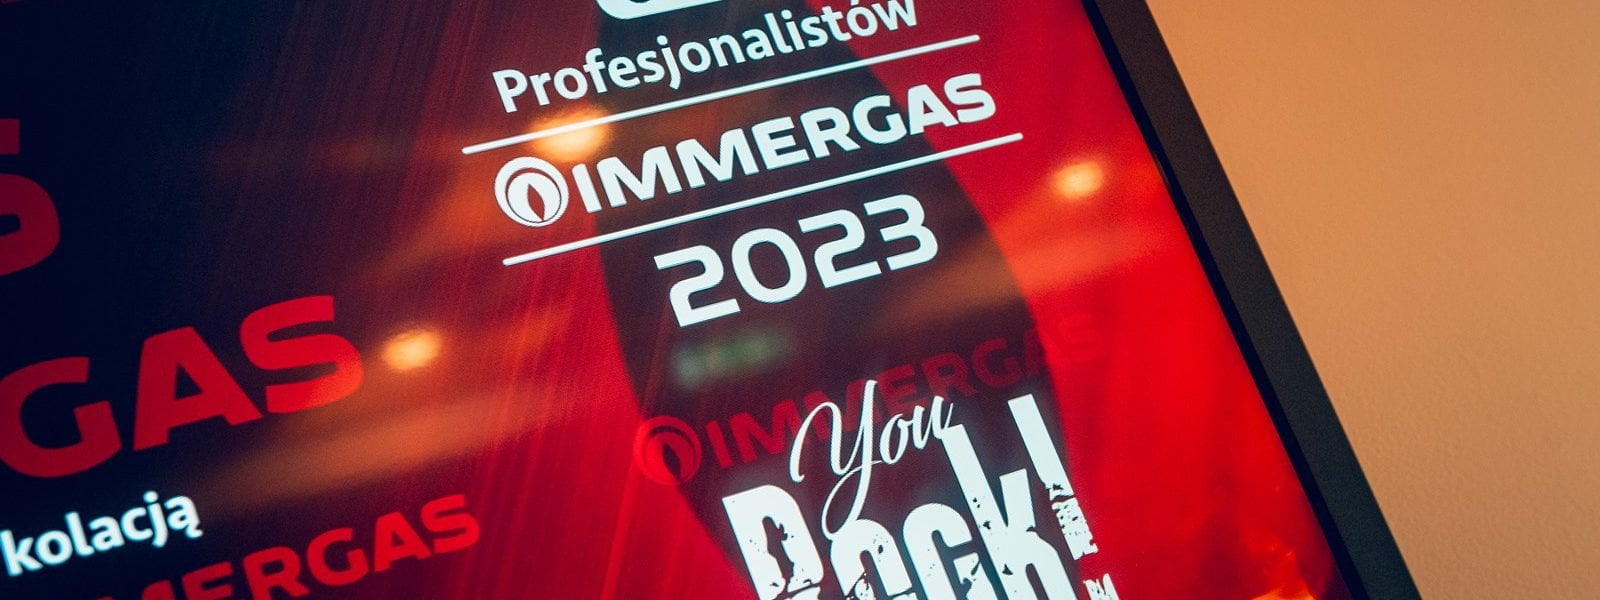 Gala Profesjonalistów Immergas 2023 – Wydarzenie Roku!